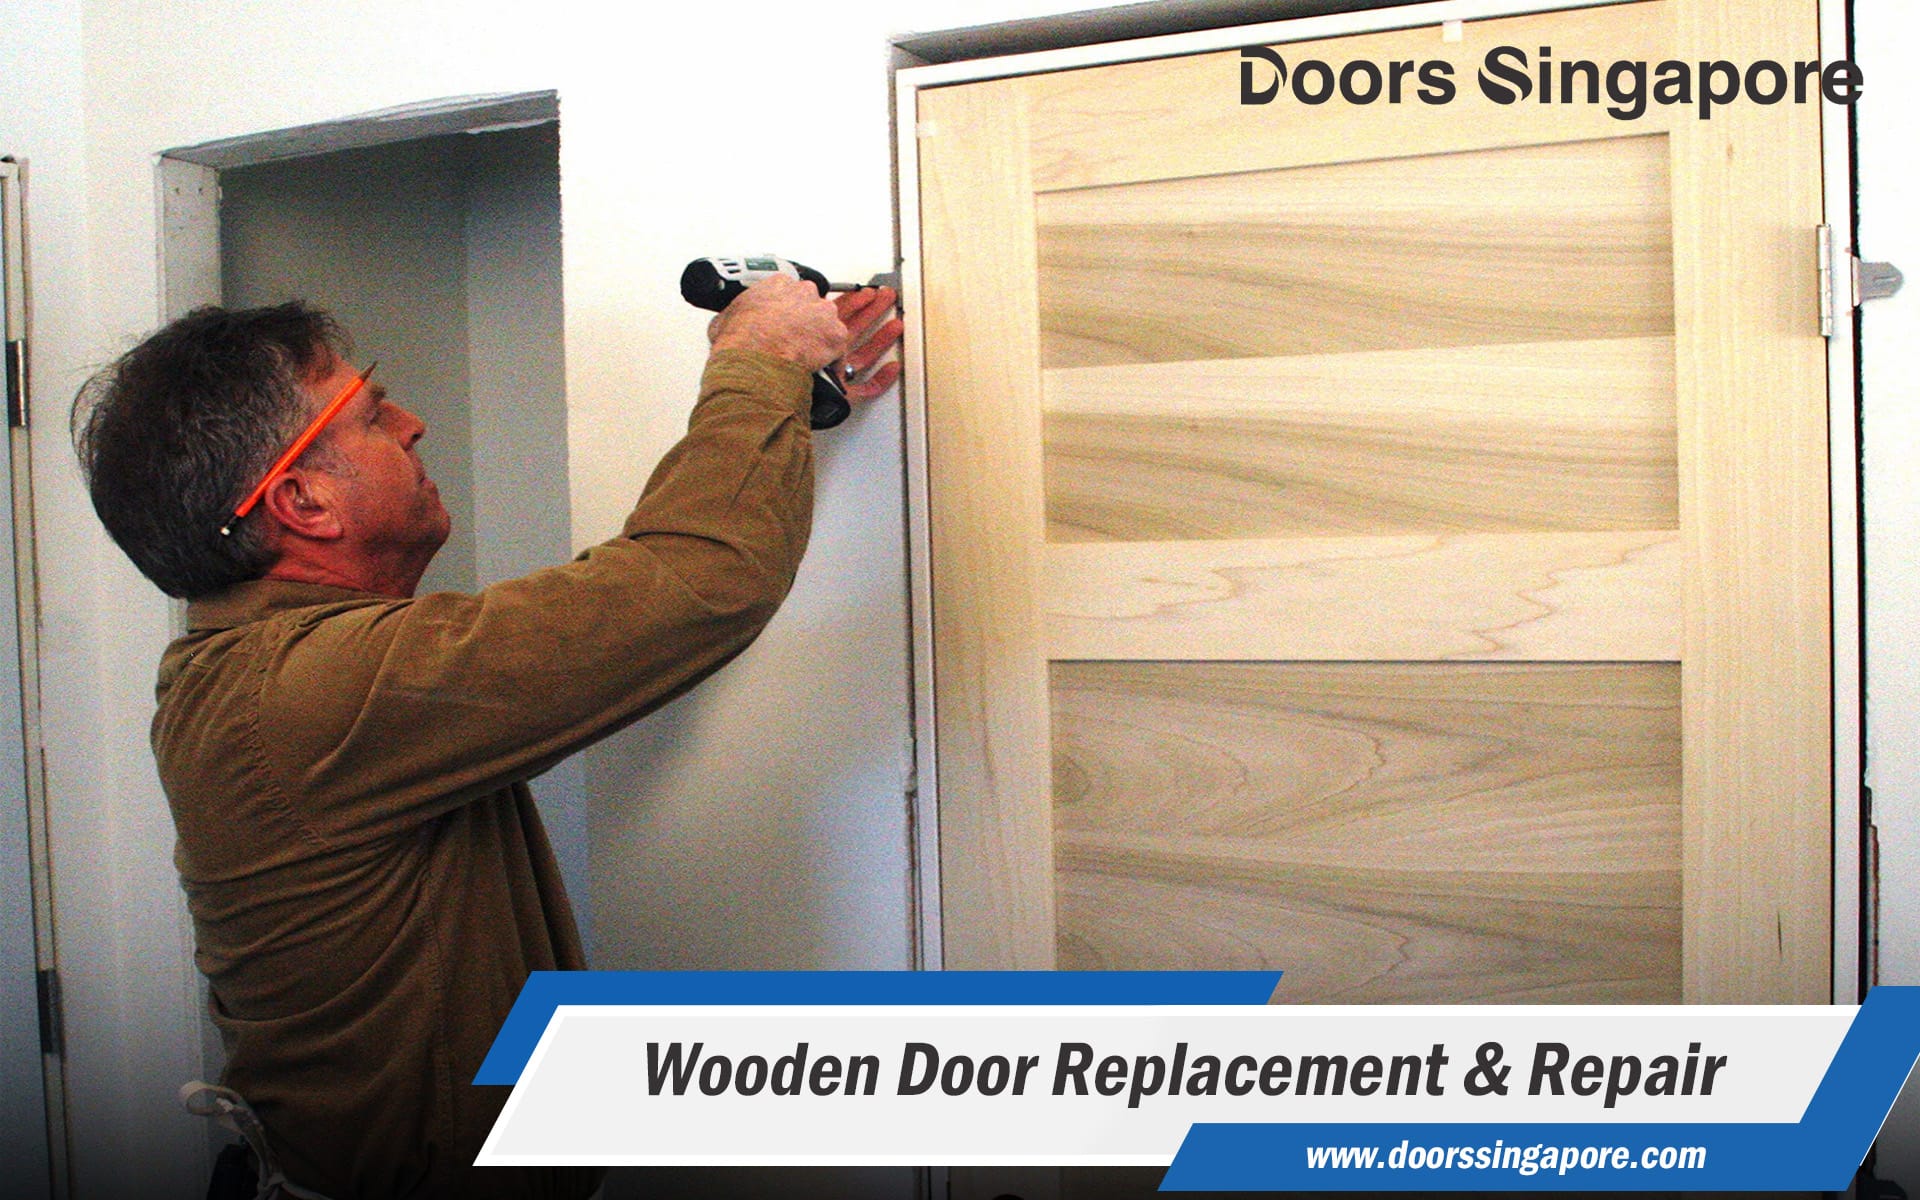 Wooden Door Replacement & Repair